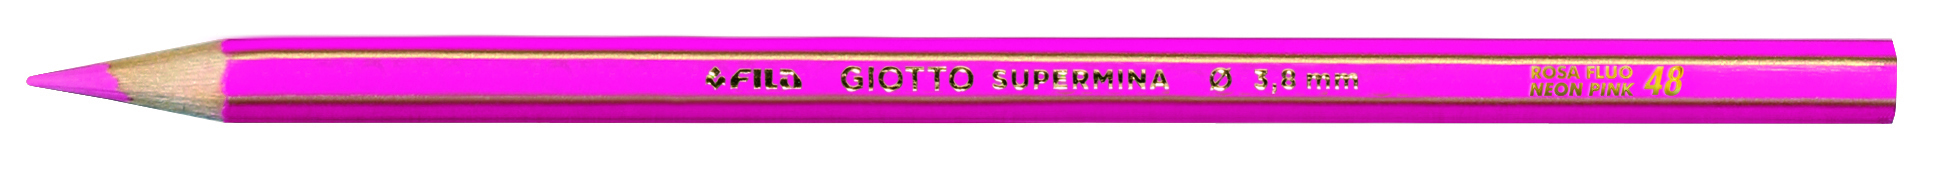 Pastello Giotto Supermina Monocolore Rosa Fluo 53 239053 8000825002168